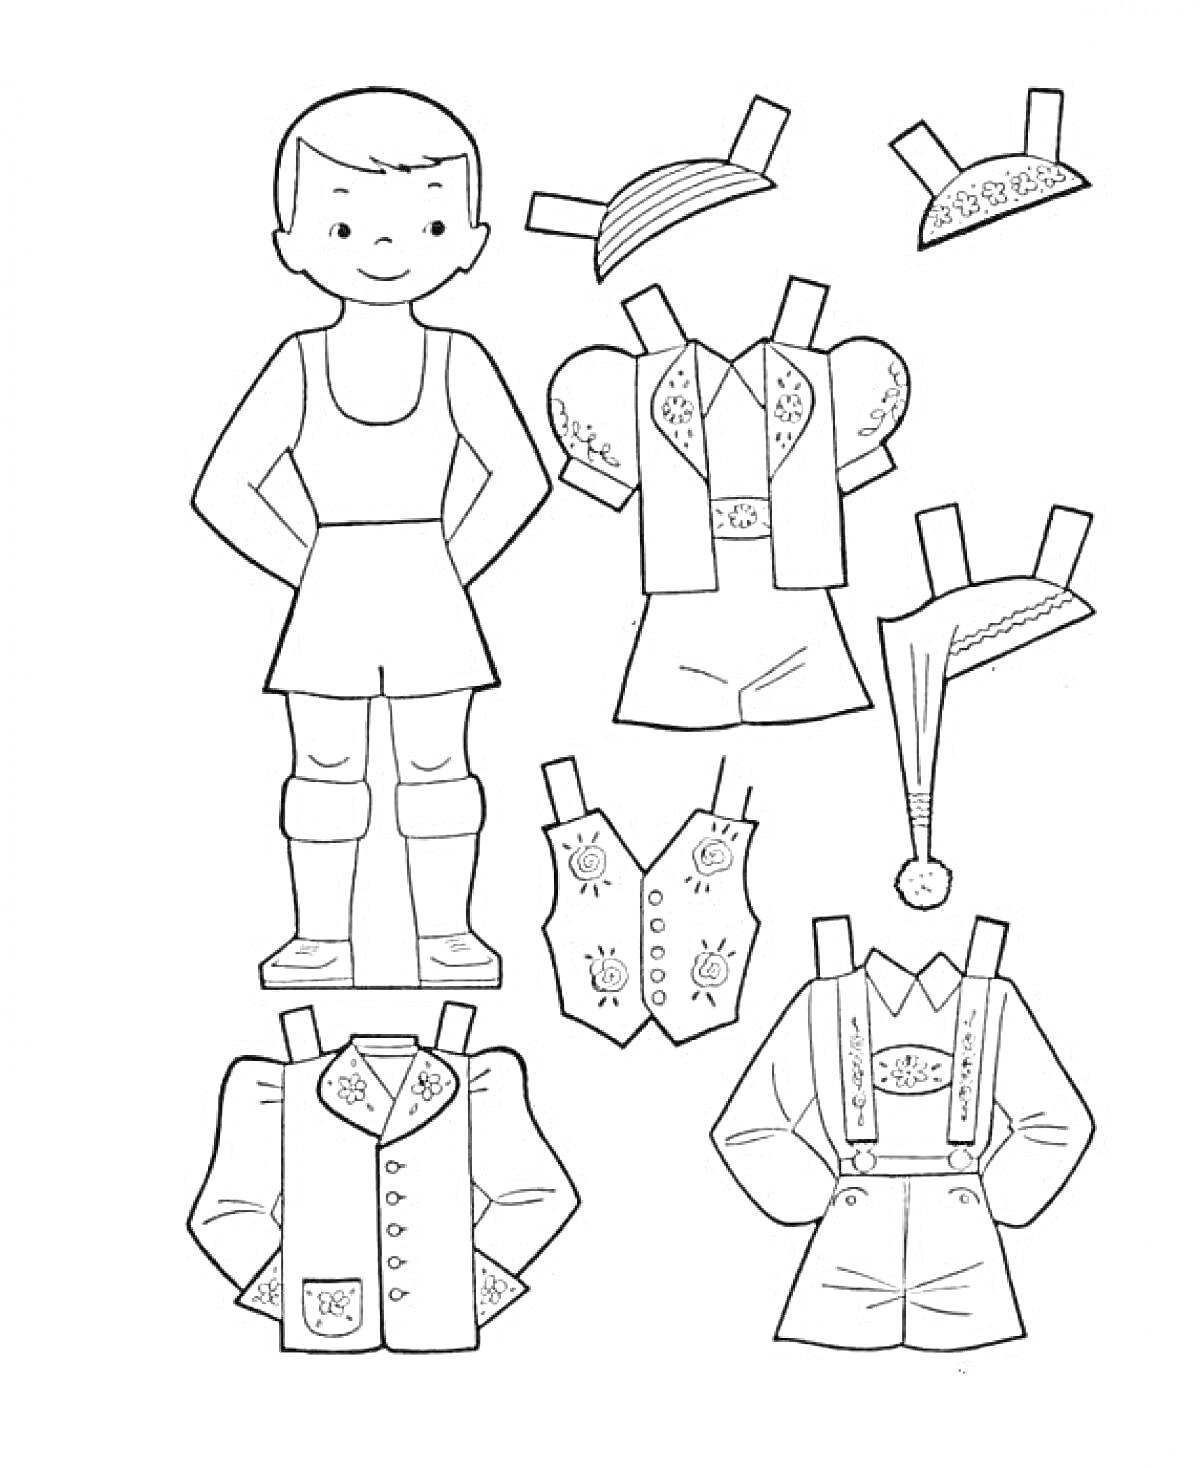 Бумажная кукла с 6 комплектами одежды, включающими традиционную одежду, повседневные костюмы и головные уборы